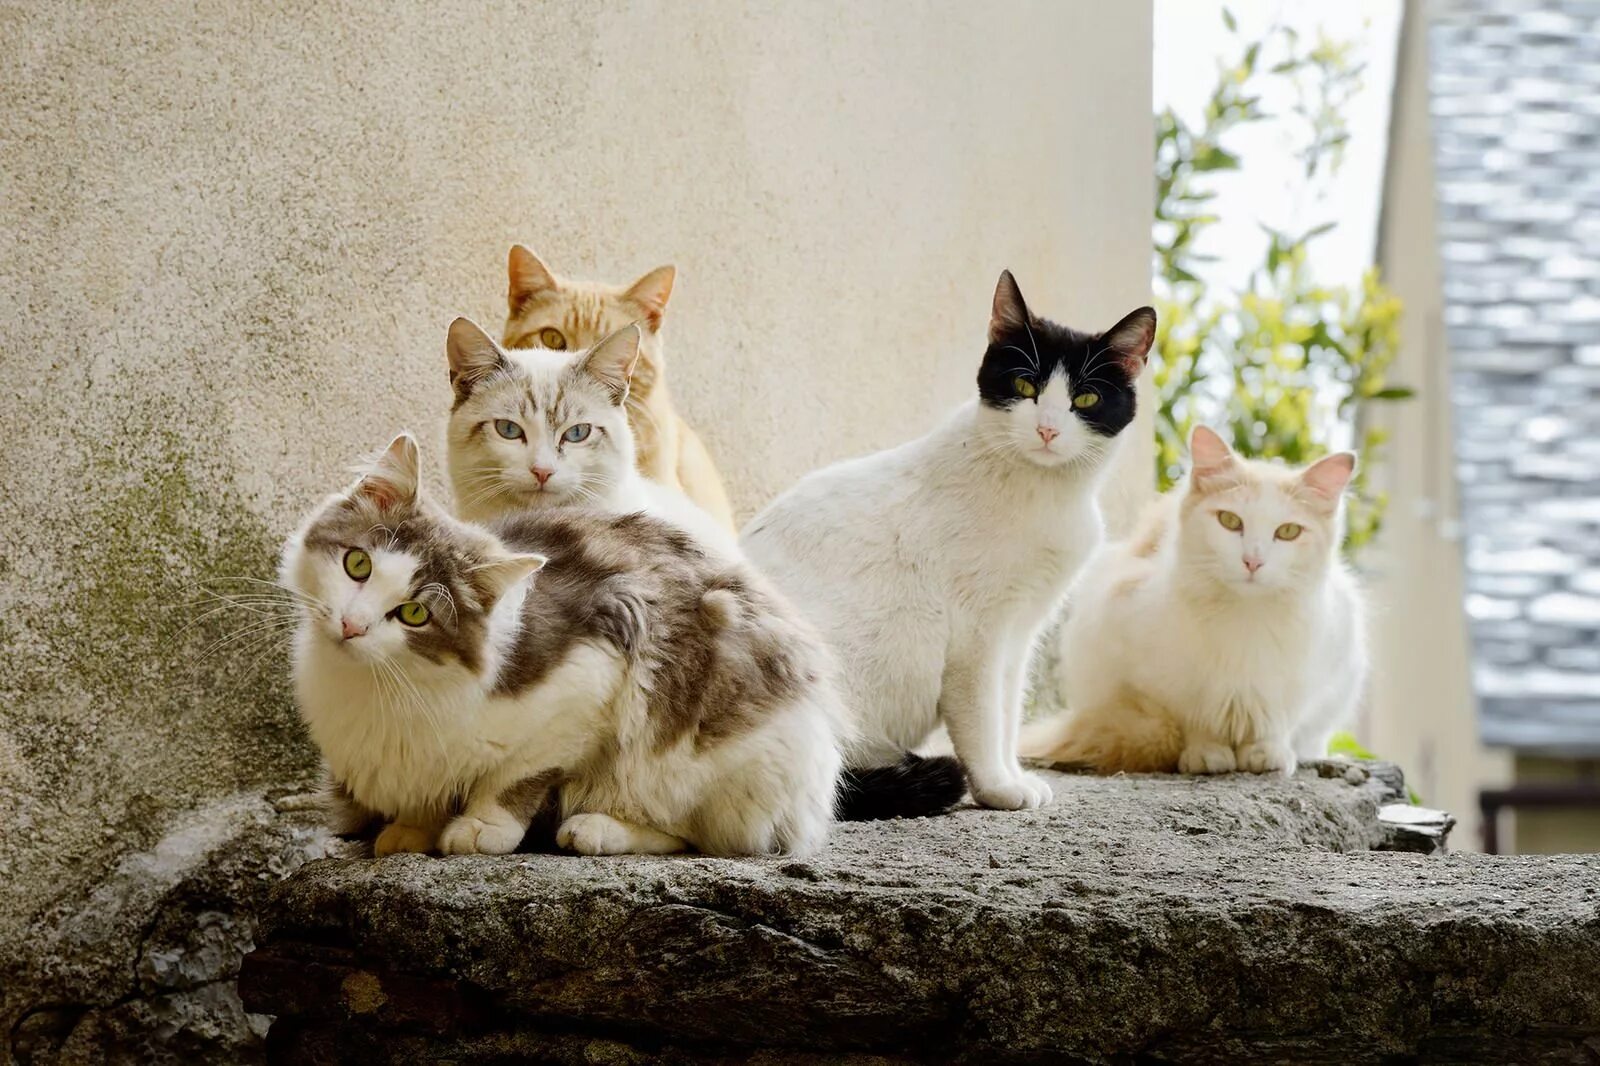 Four cat